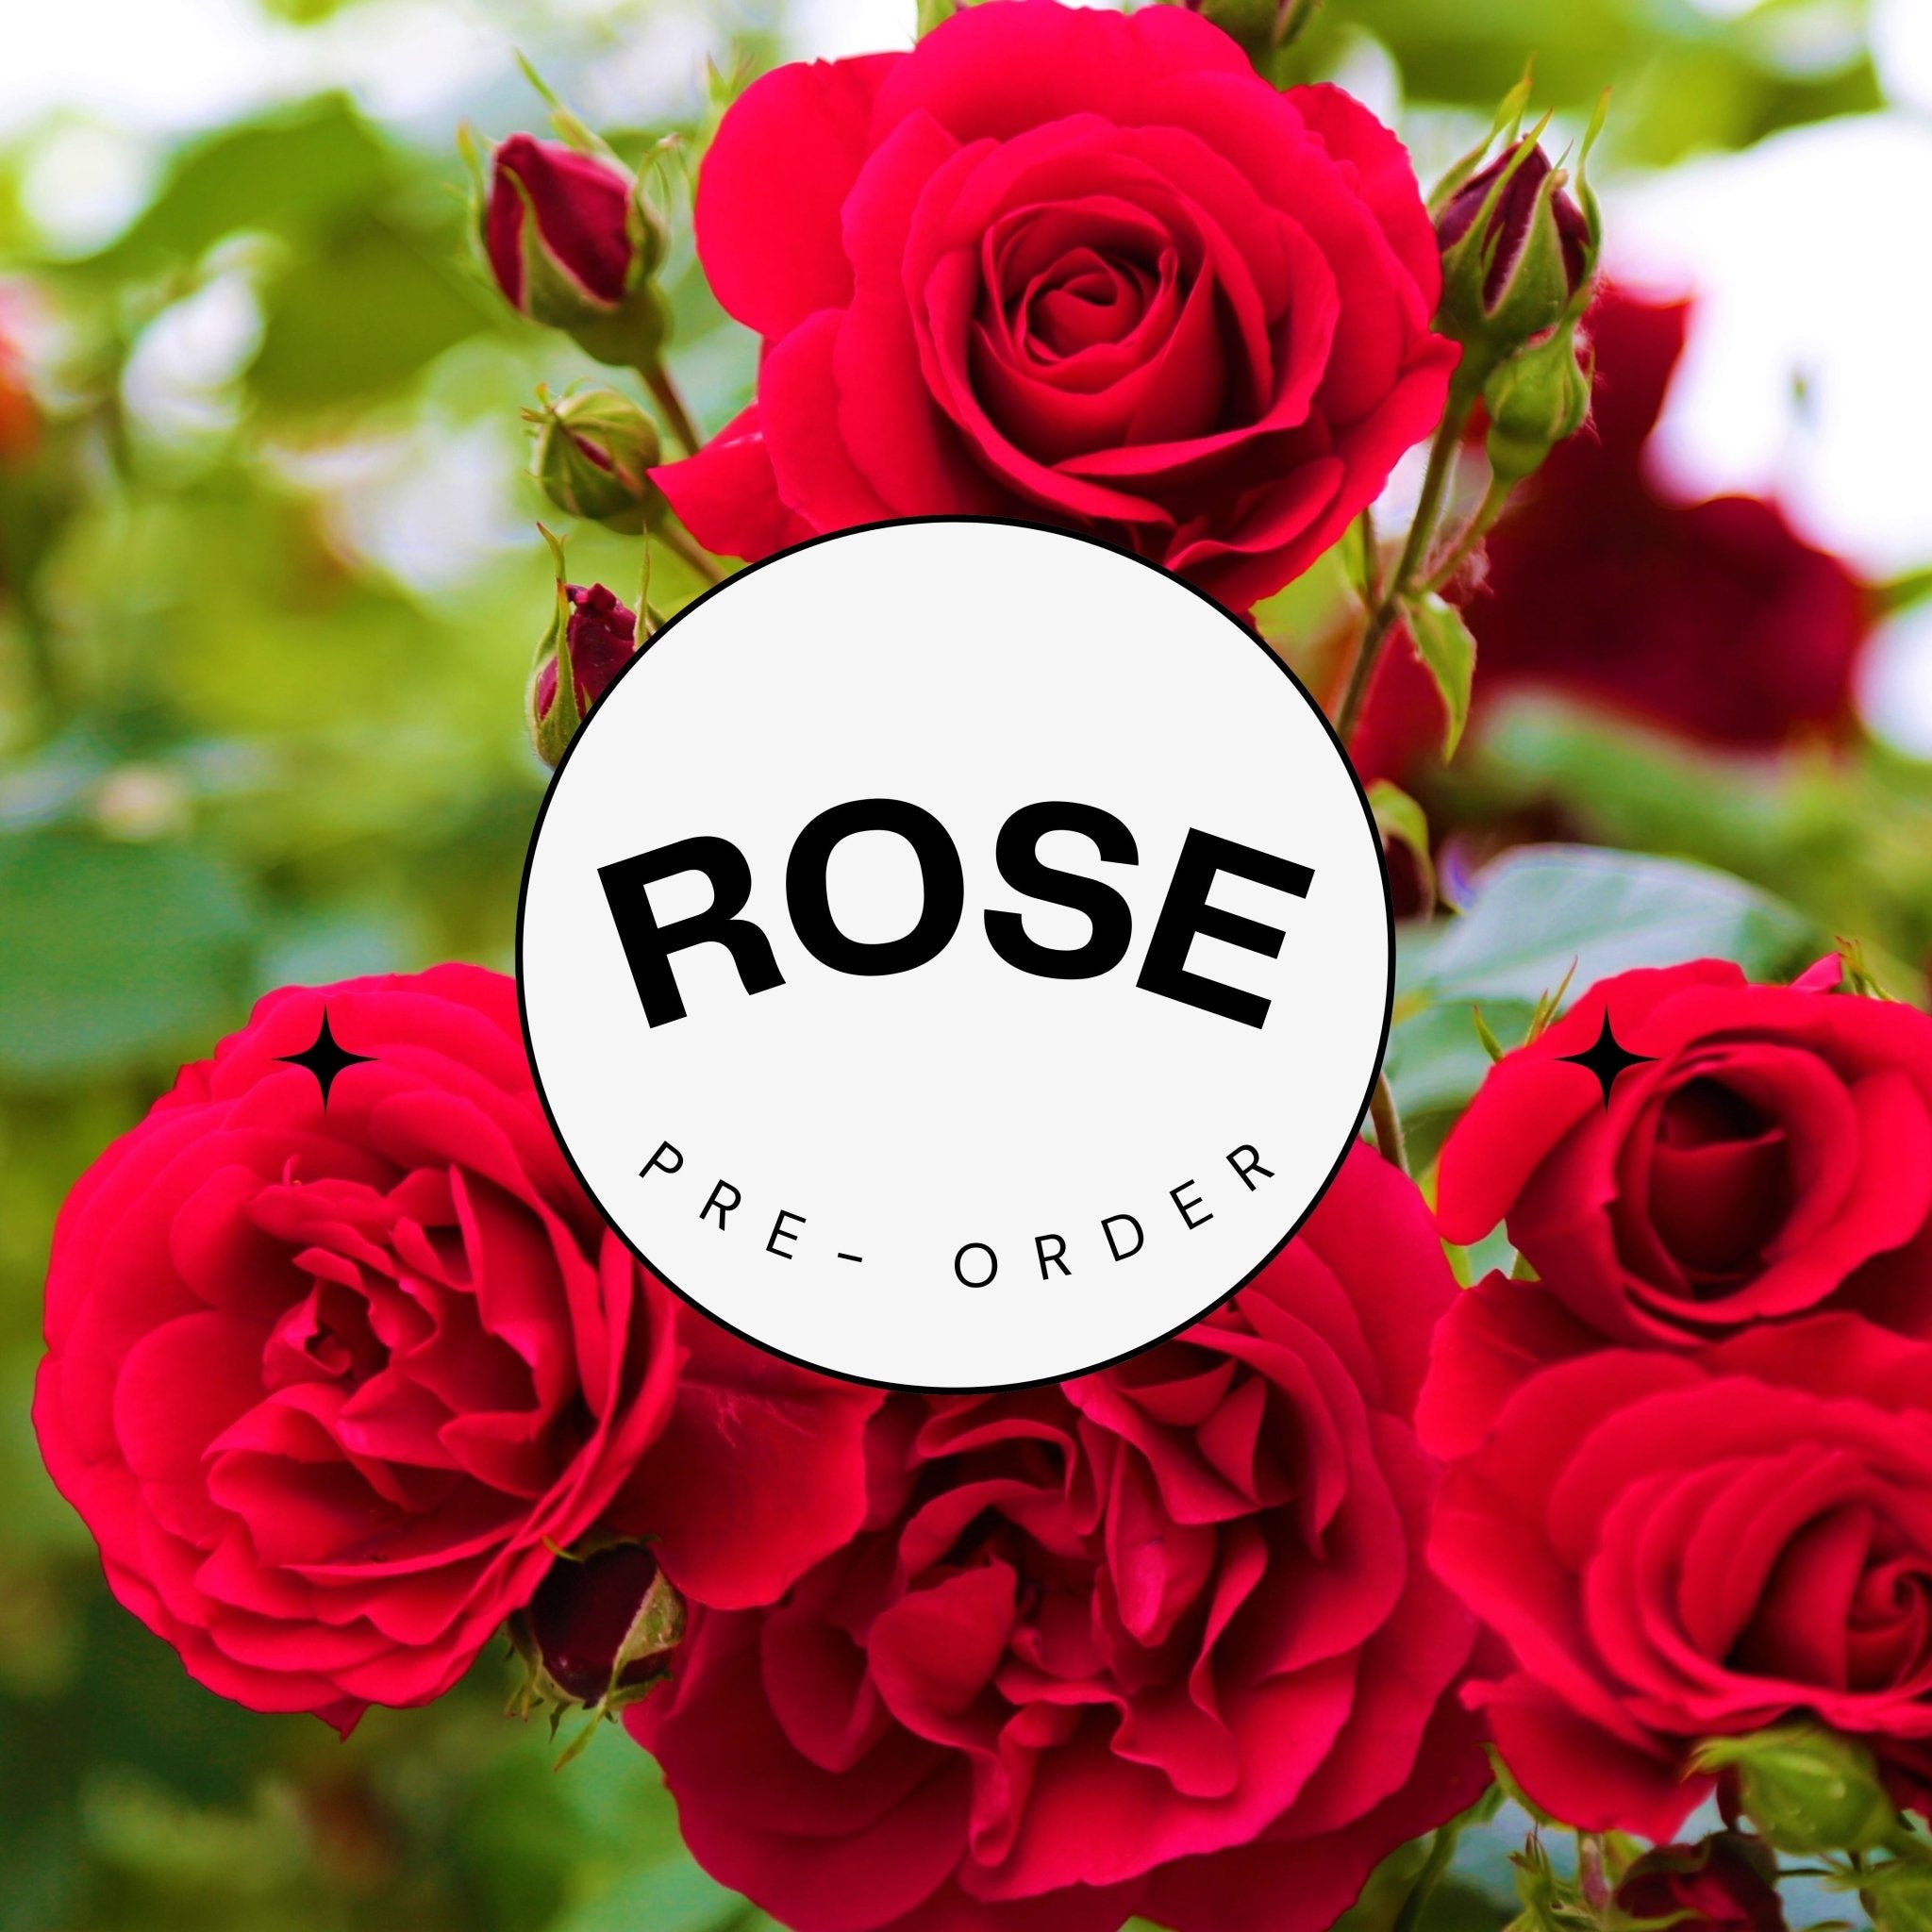 Rose - Preorder - Oldboy's Flowers